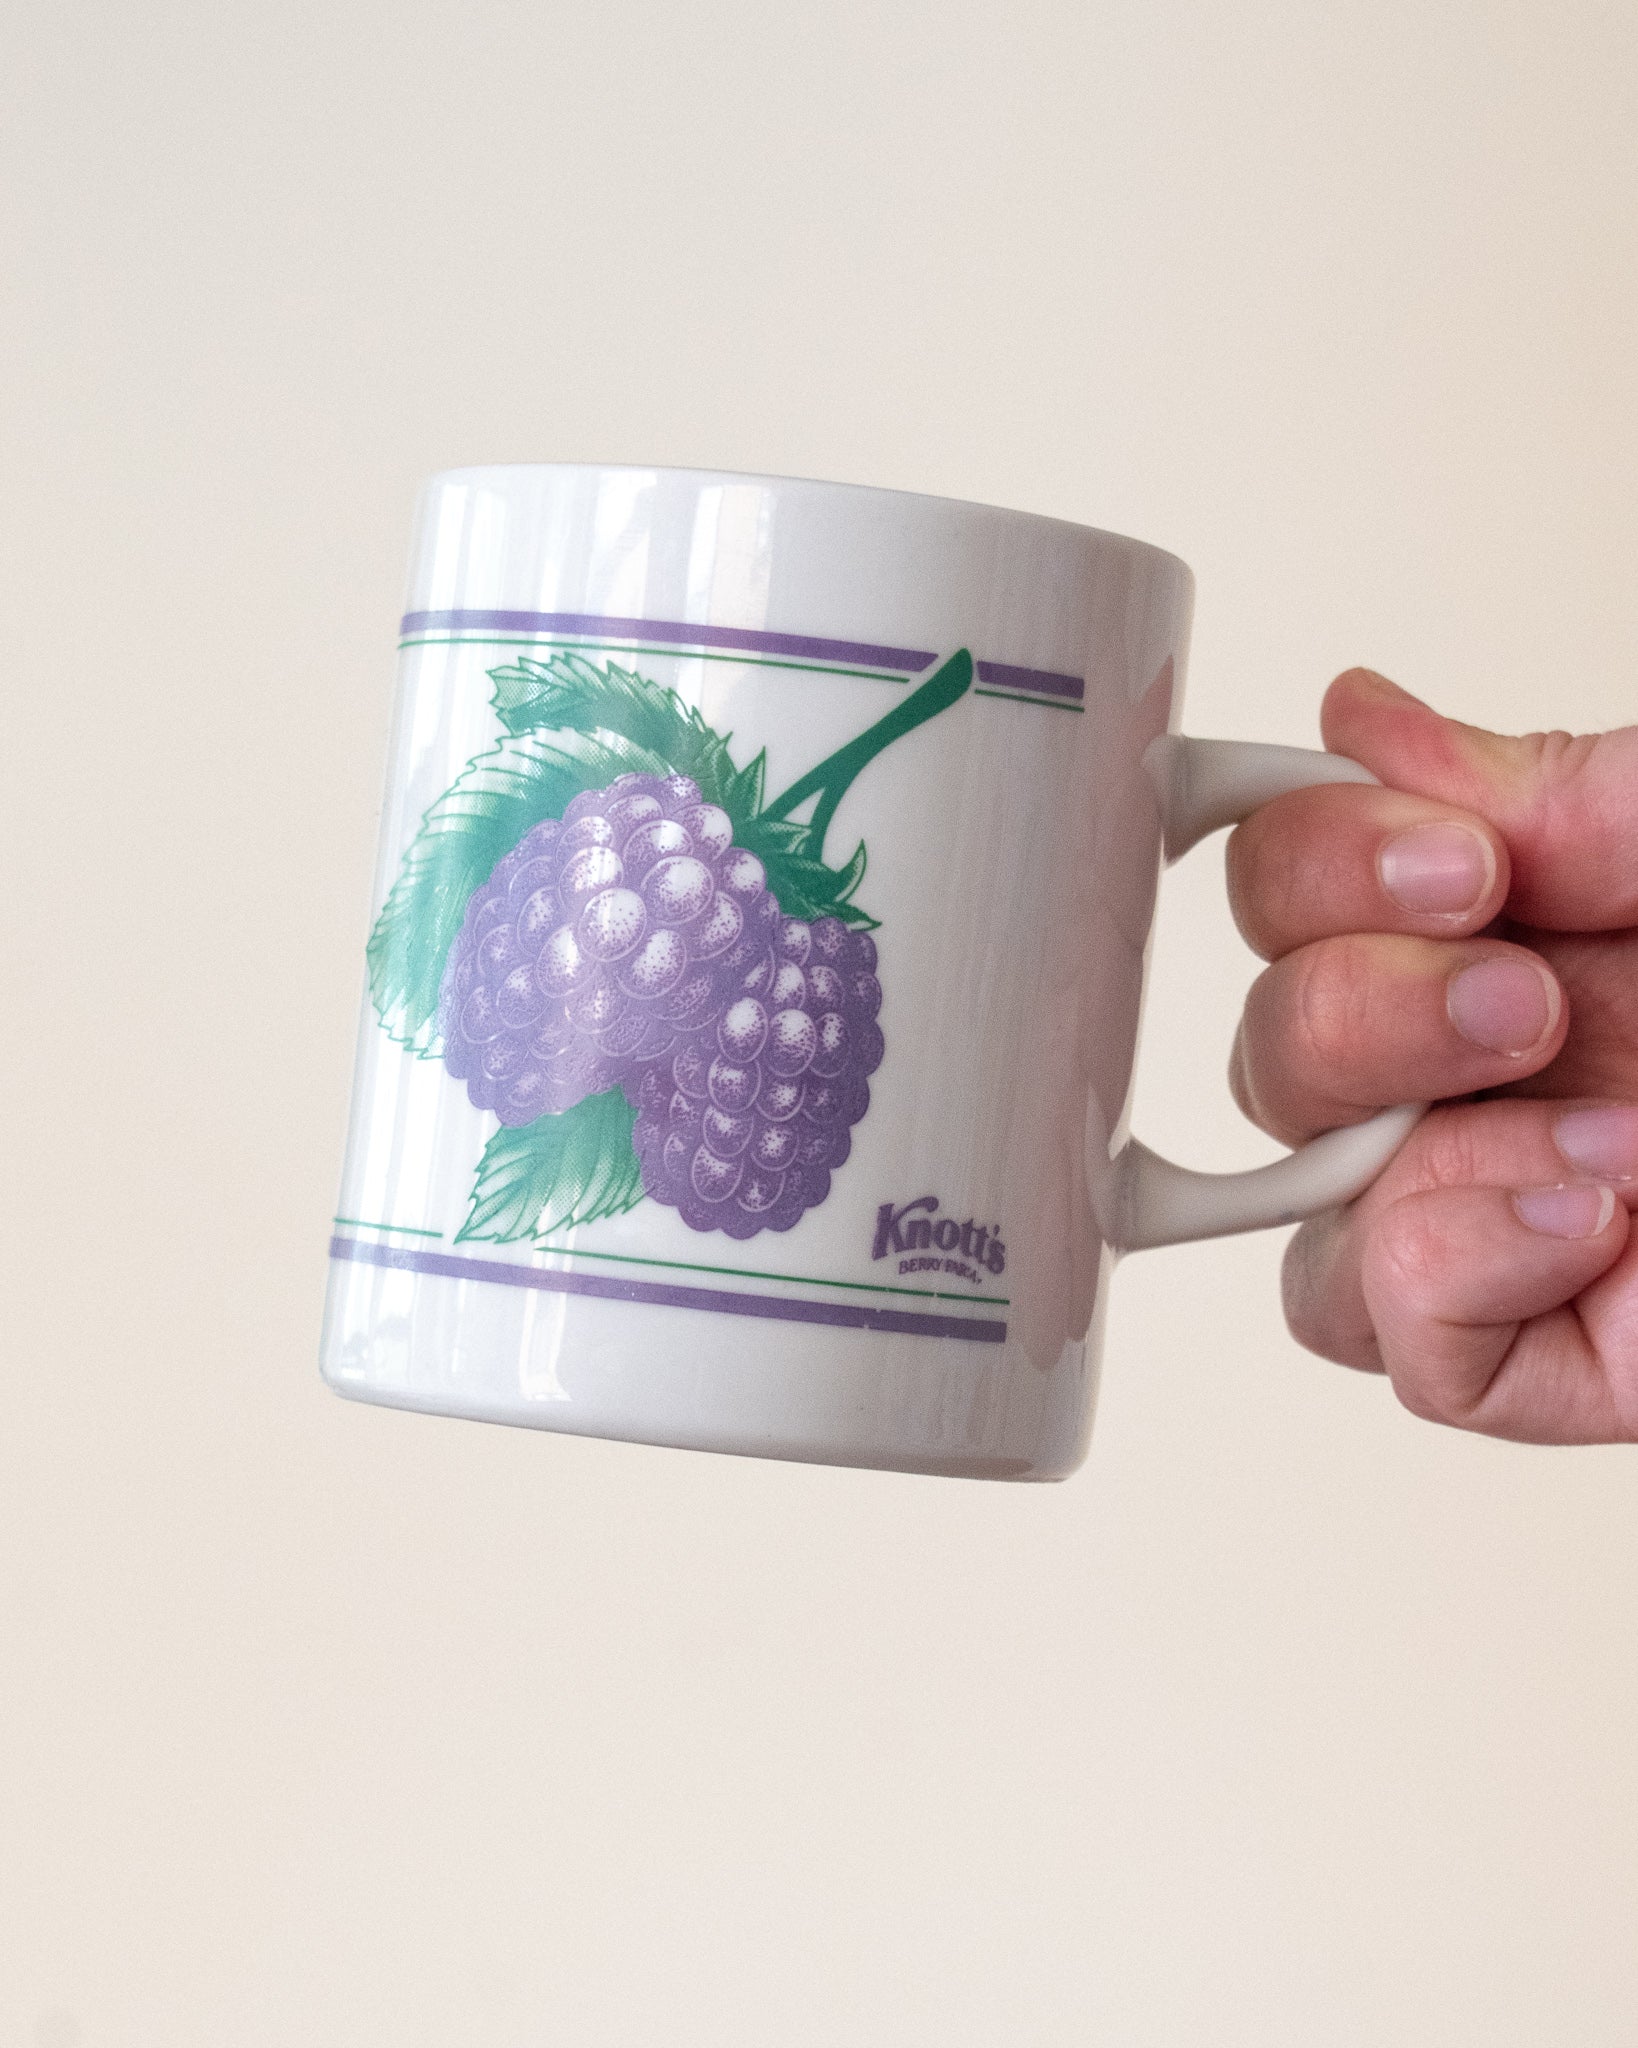 Grape mug